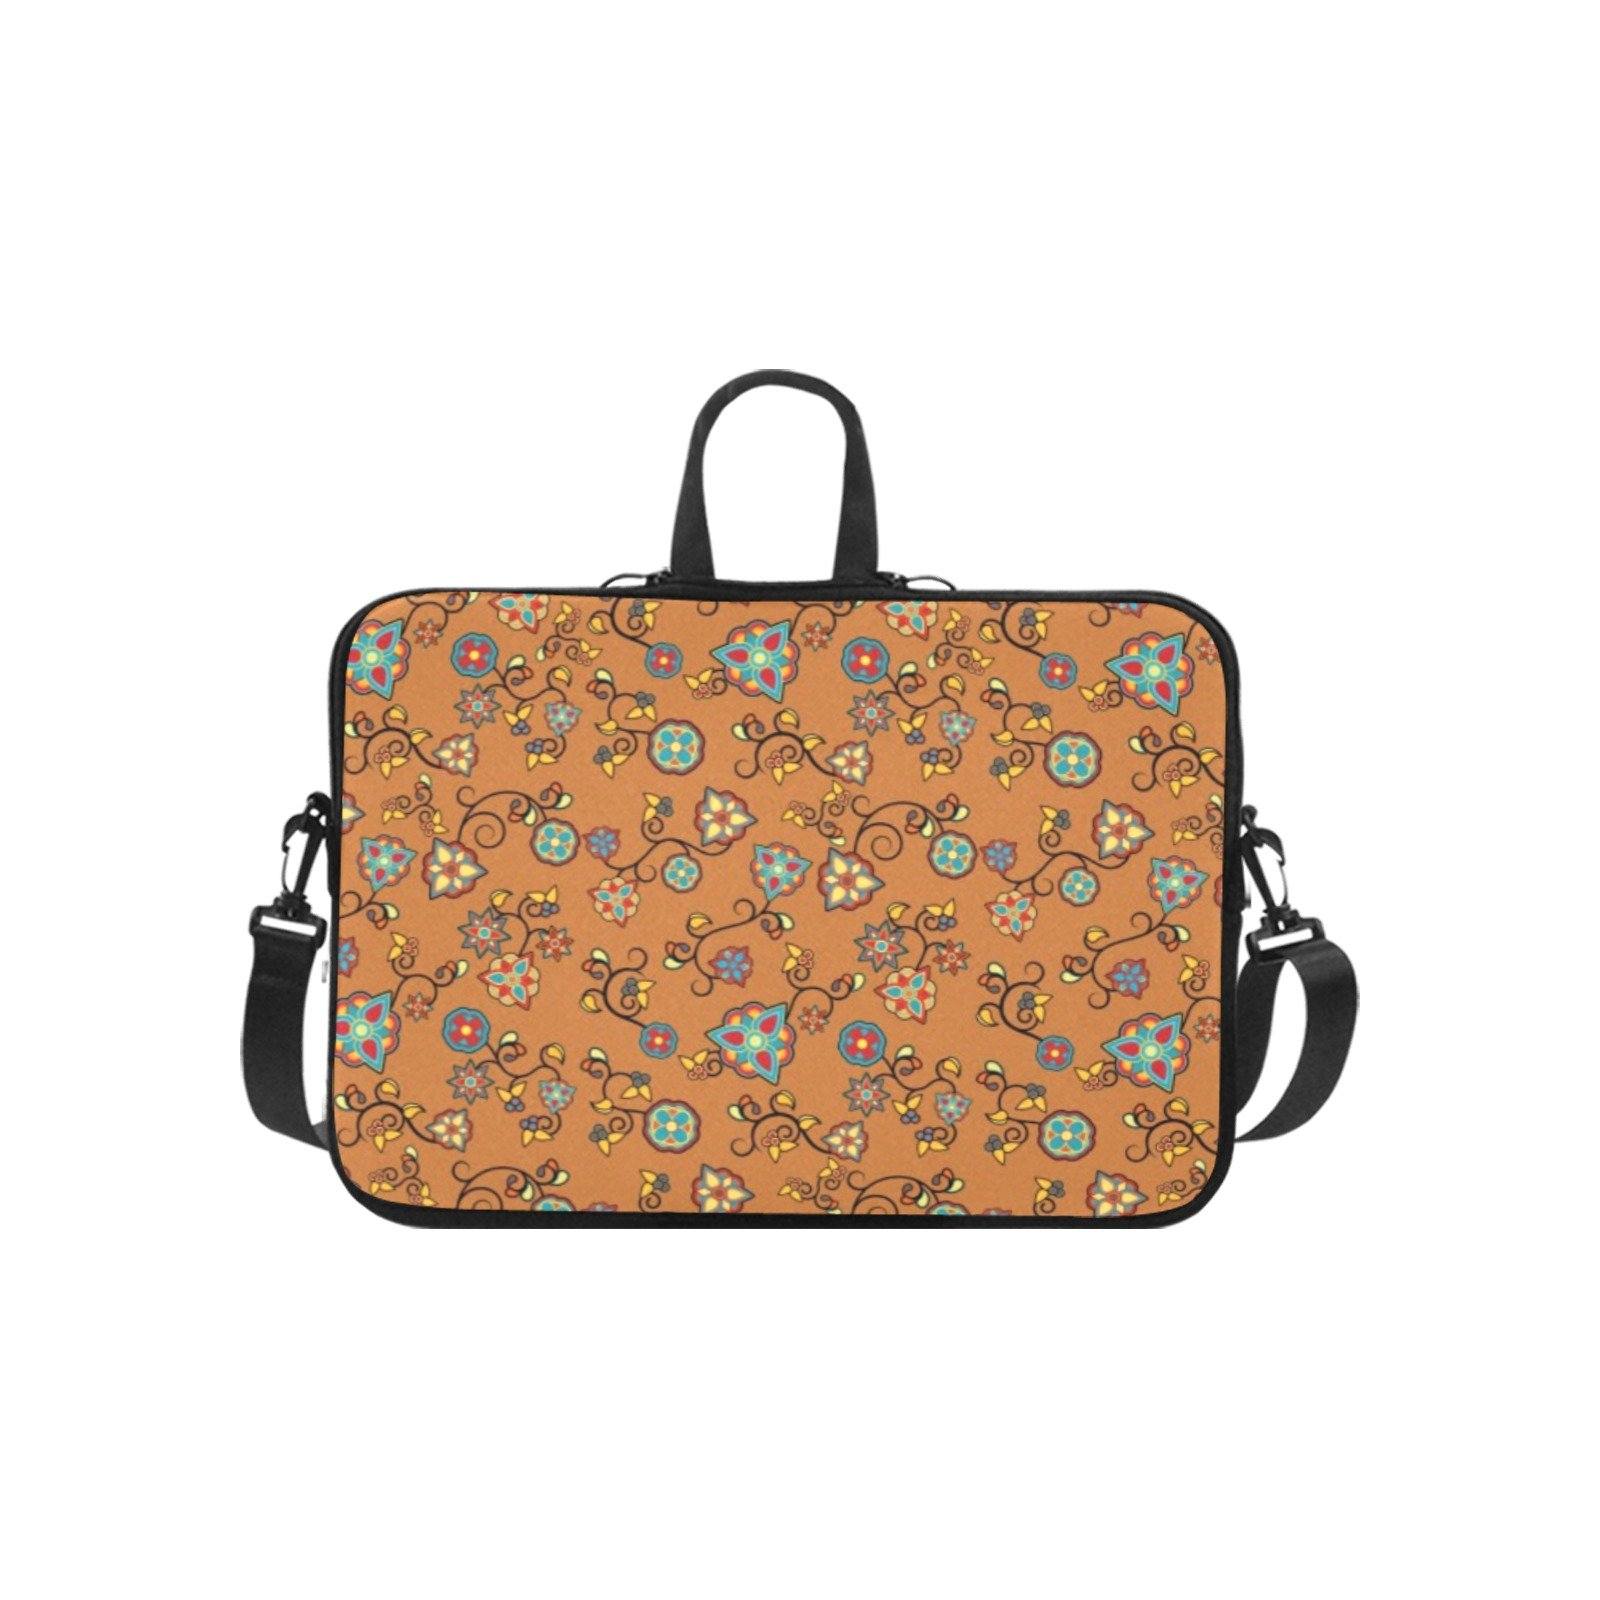 Fire Bloom Light Laptop Handbags 10" bag e-joyer 